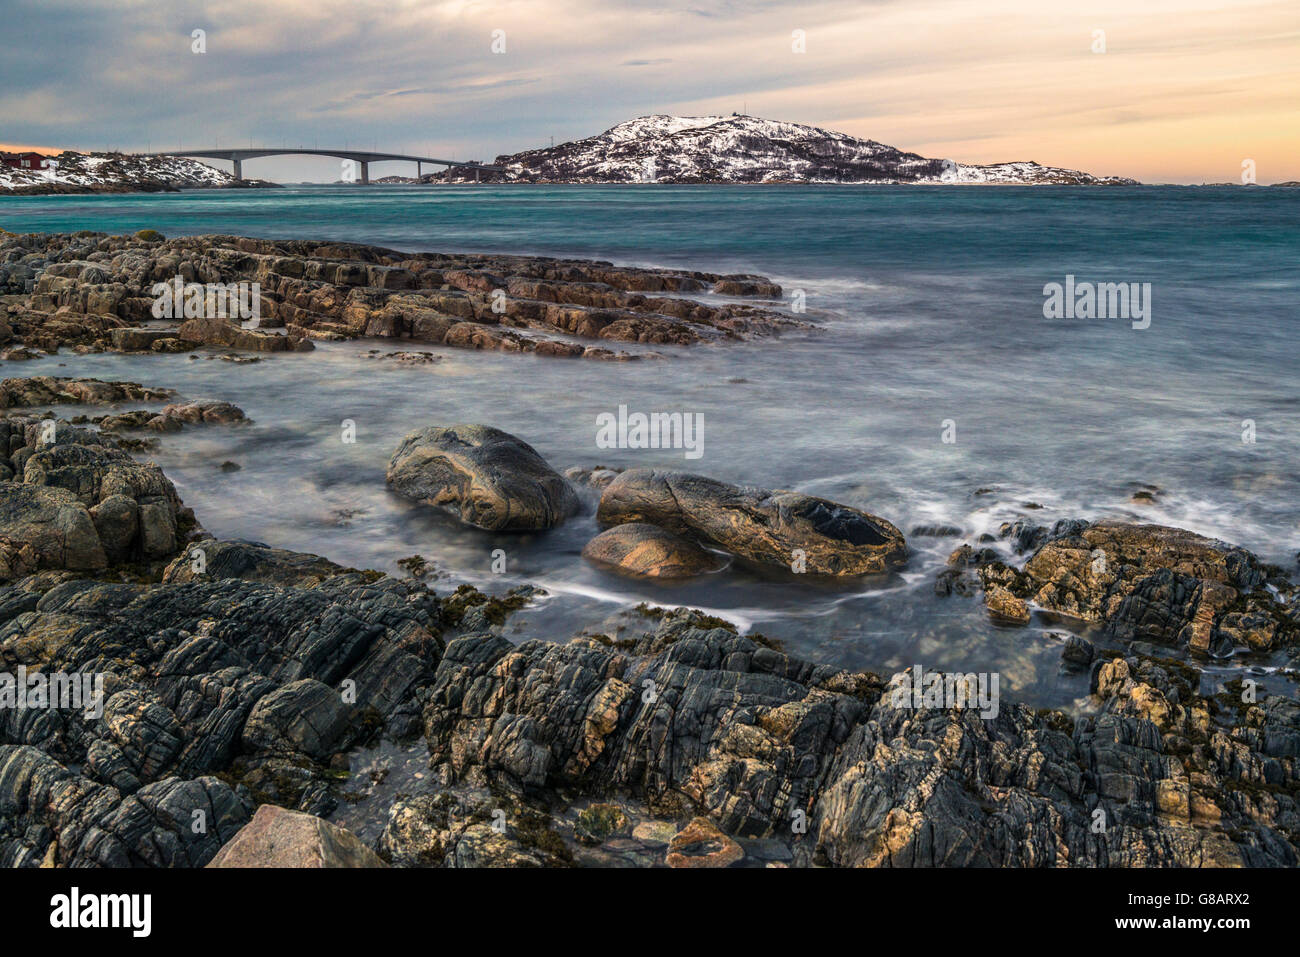 Coastline of Kvaløya island with Sommarøy island, Norway Stock Photo